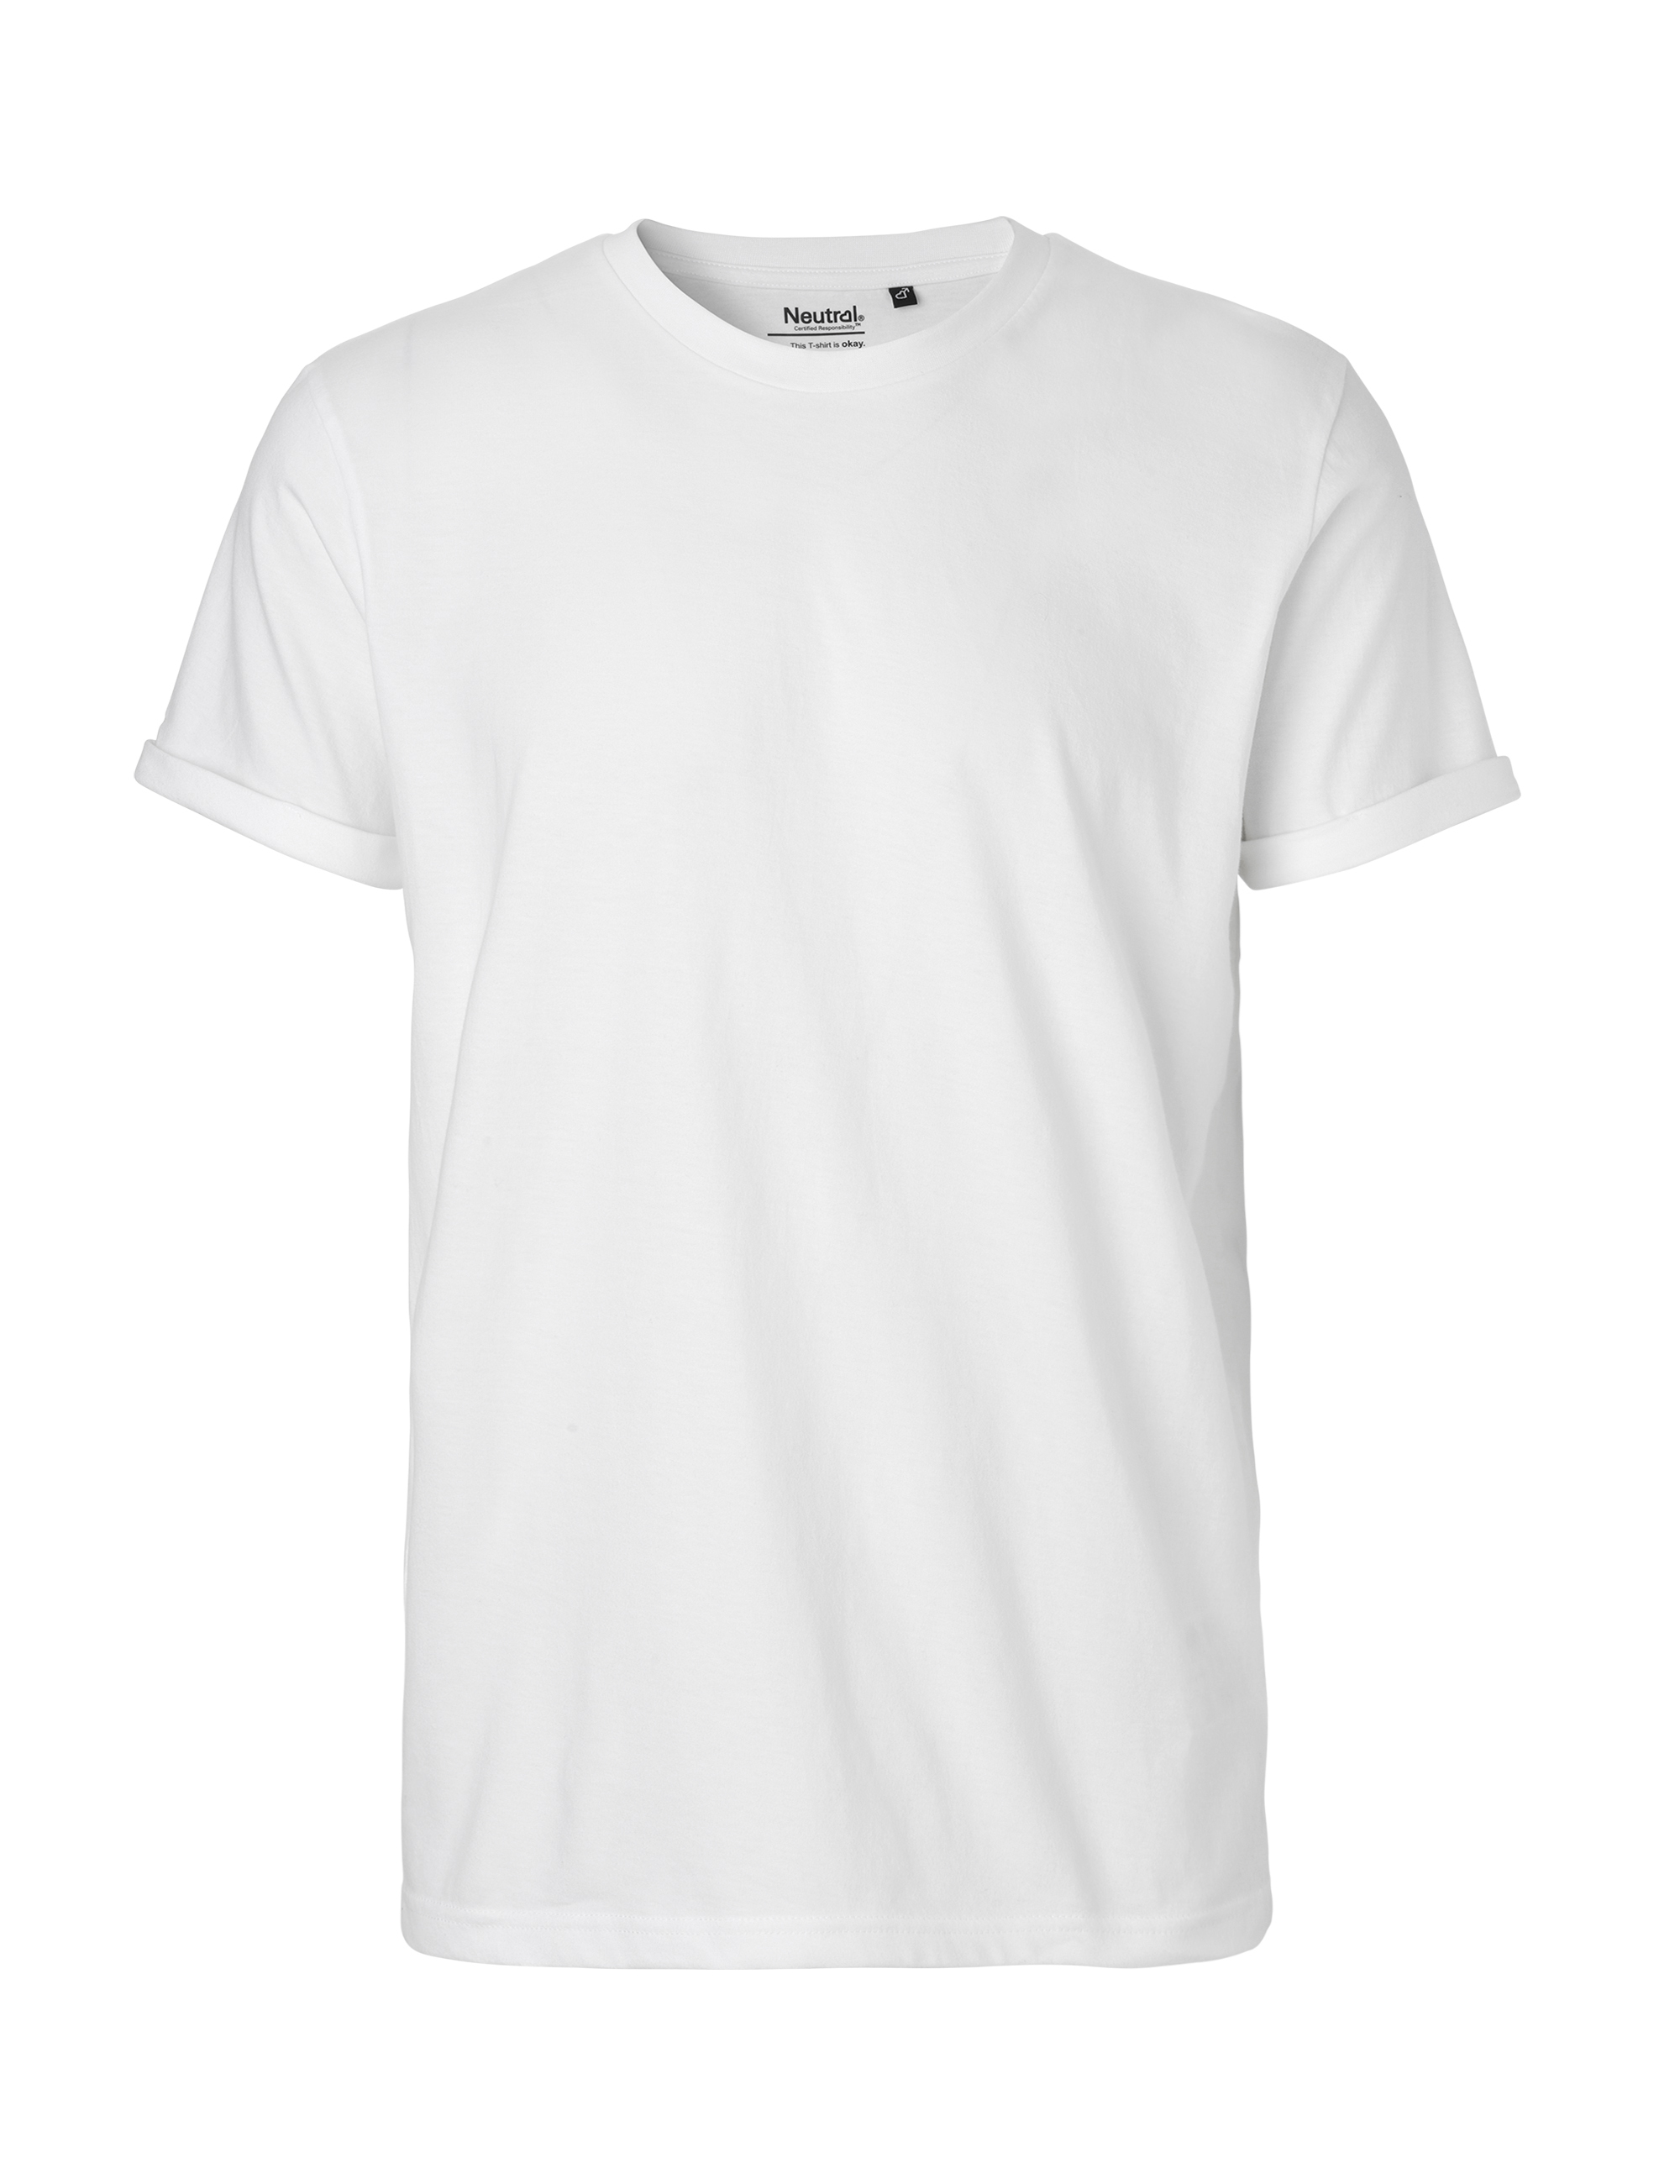 Fairtrade Organic Men's Roll Up Sleeve T-shirt 155 g/m² Neutral®